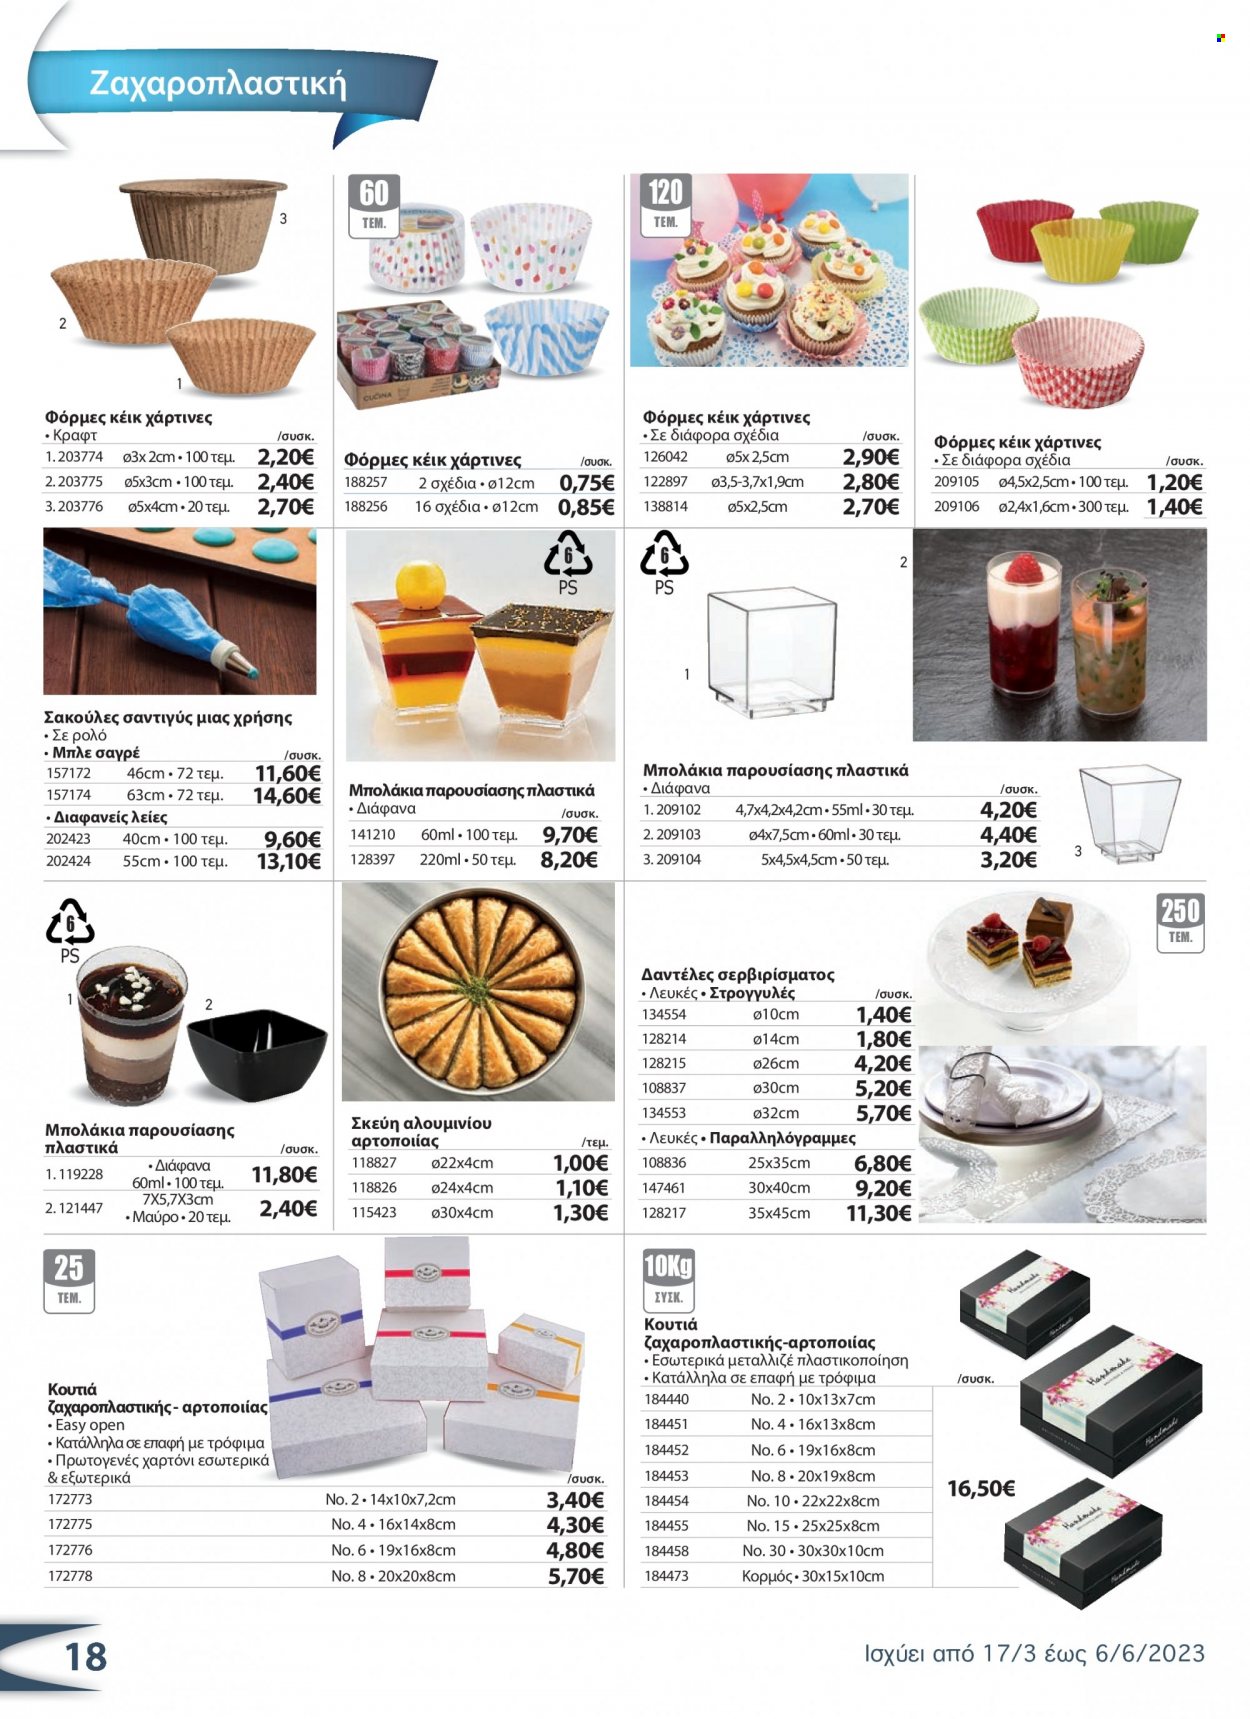 thumbnail - Φυλλάδια The Mart - 17.03.2023 - 06.06.2023 - Εκπτωτικά προϊόντα - κέικ, ρολό, ζαχαροπλαστική. Σελίδα 18.